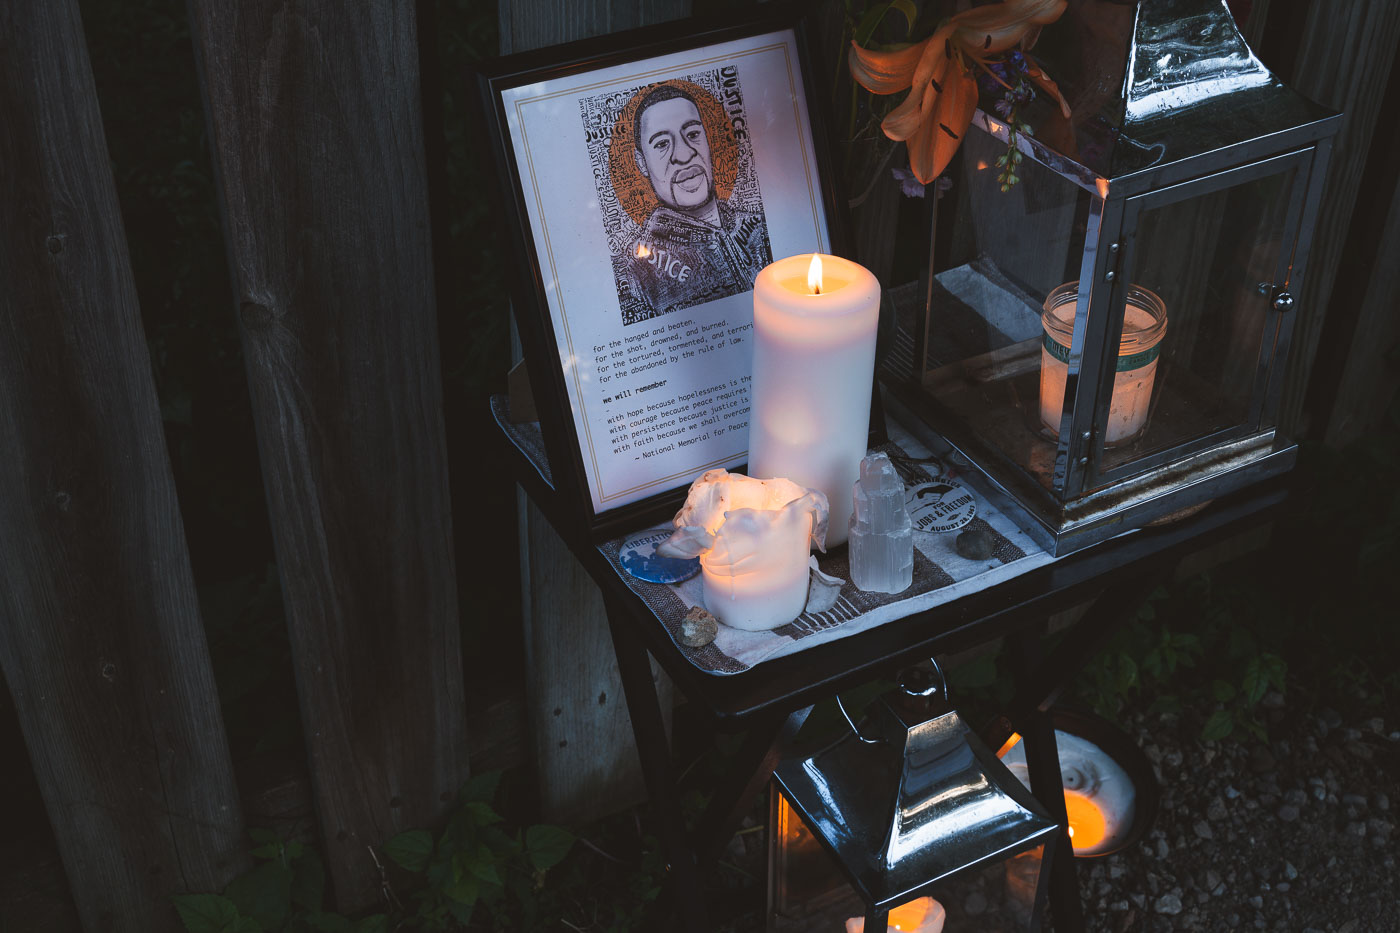 Memorial for George Floyd in a South Minneapolis neighborhood